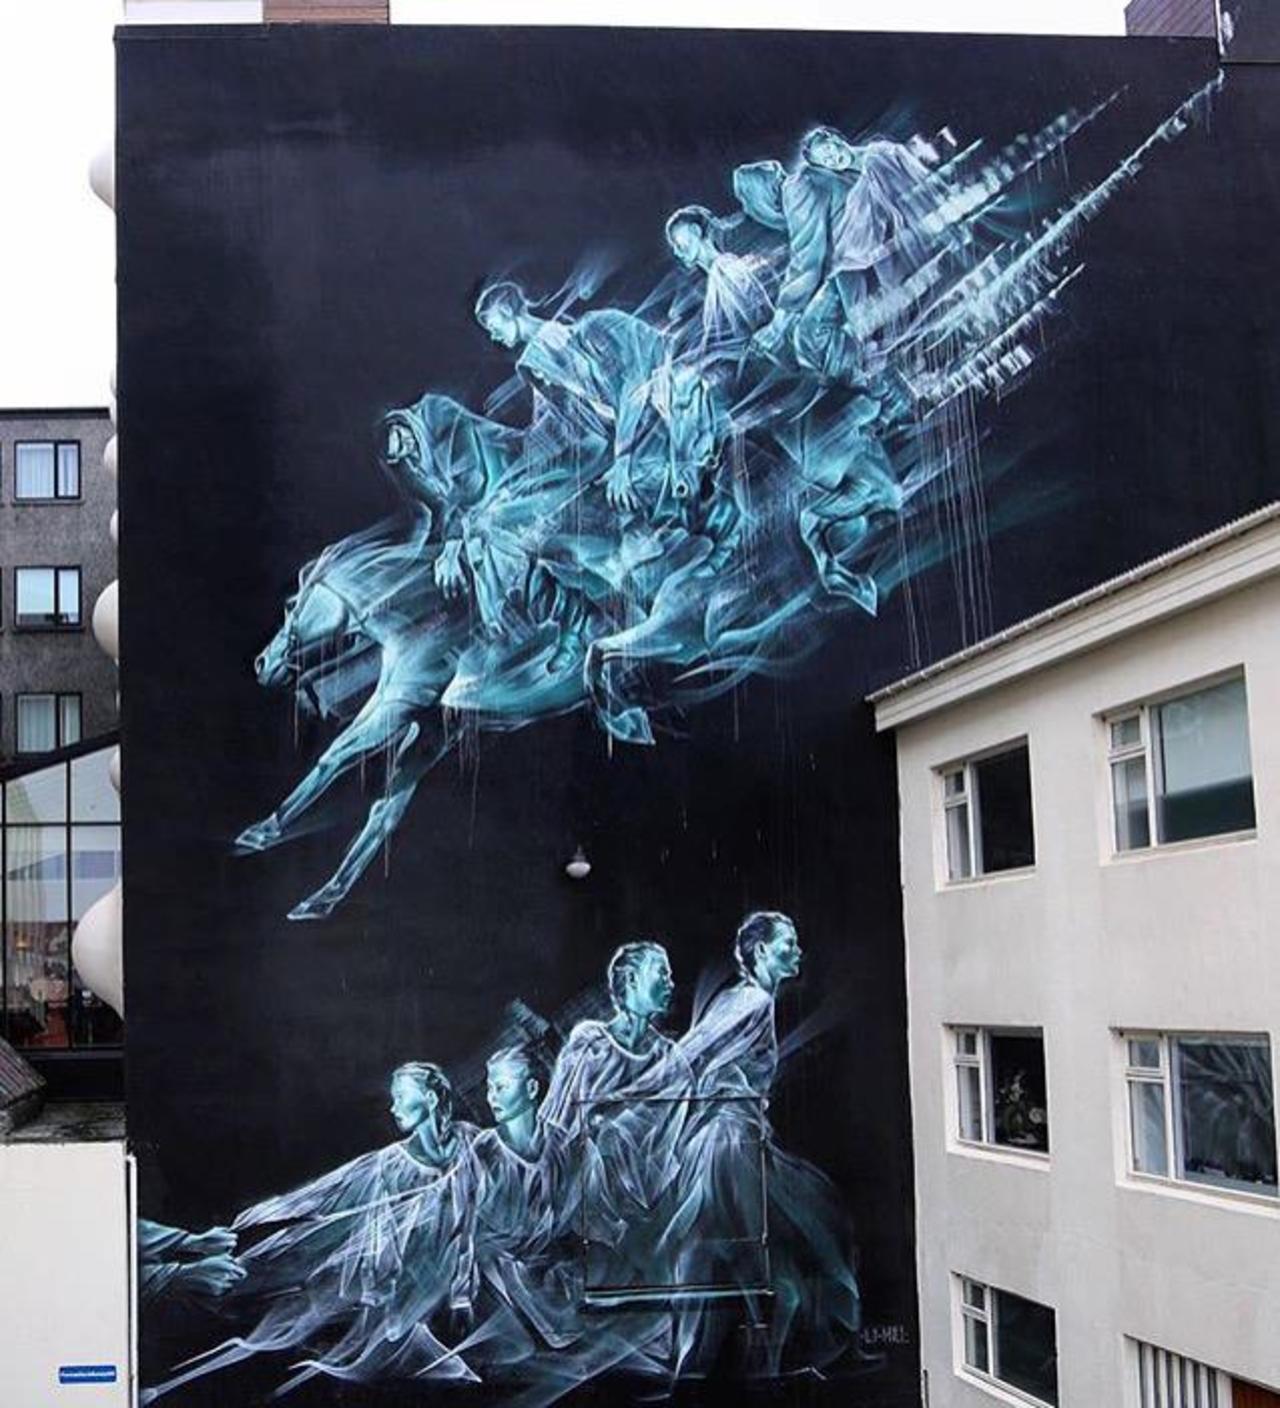 Street Art by li hill in Reykjavik 

#art #graffiti #mural #streetart http://t.co/XOLVnkoU2Y